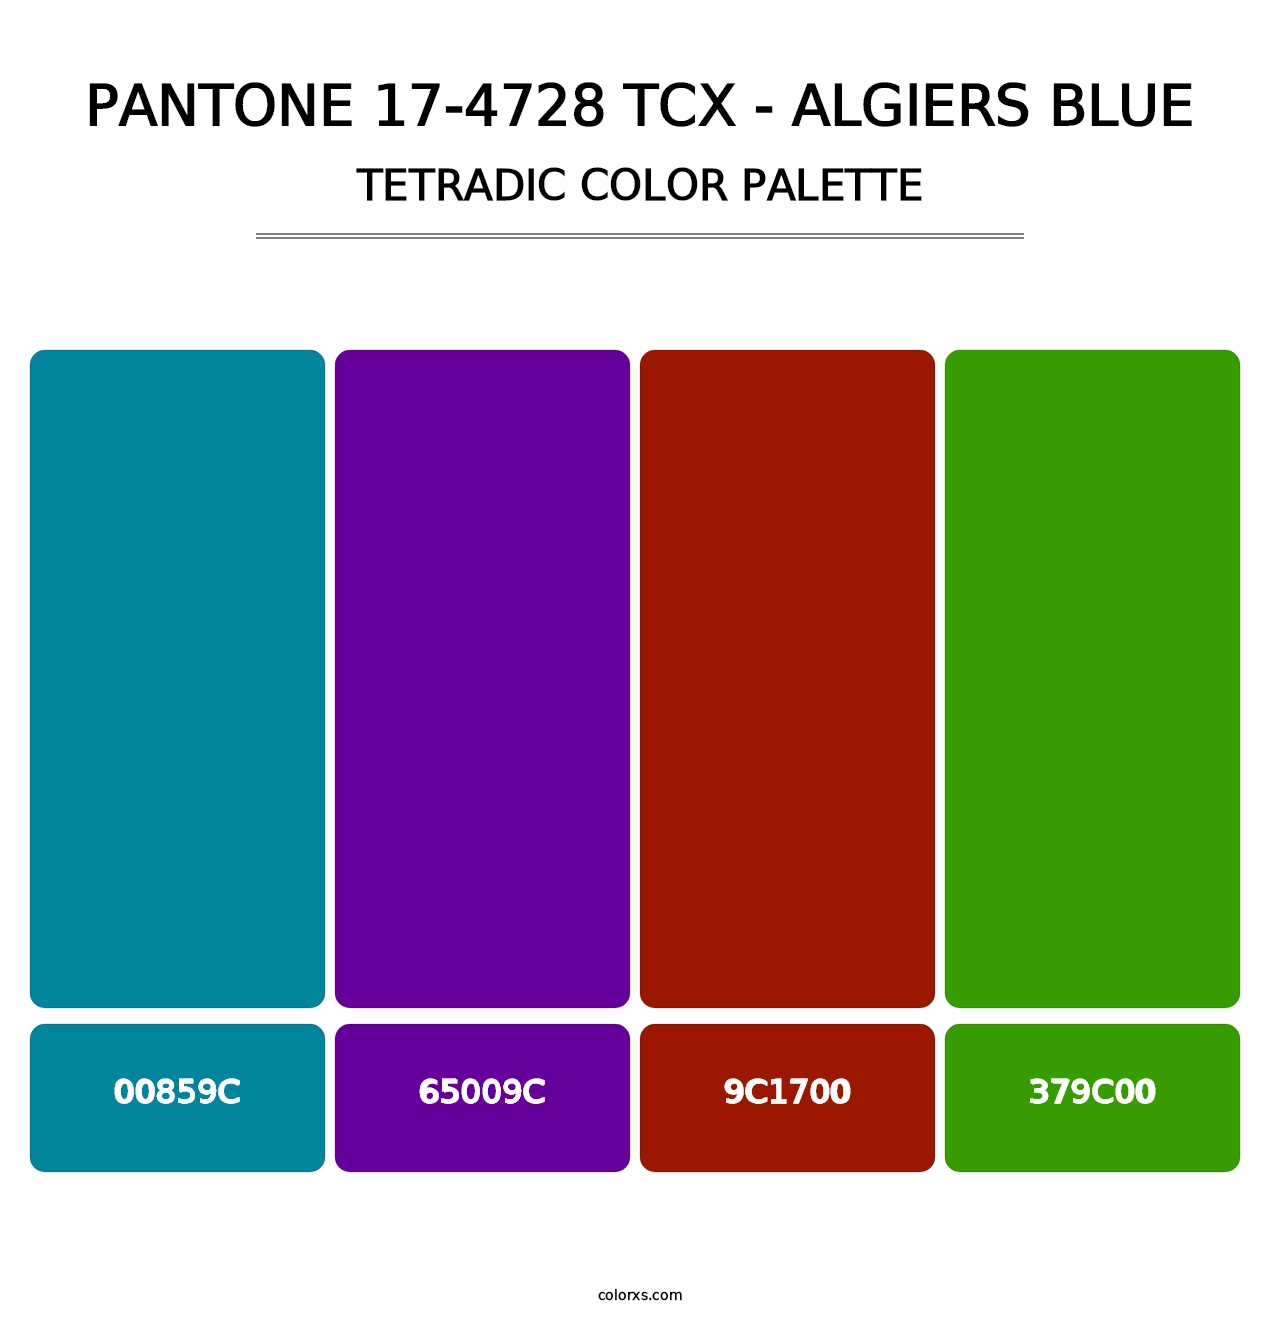 PANTONE 17-4728 TCX - Algiers Blue - Tetradic Color Palette